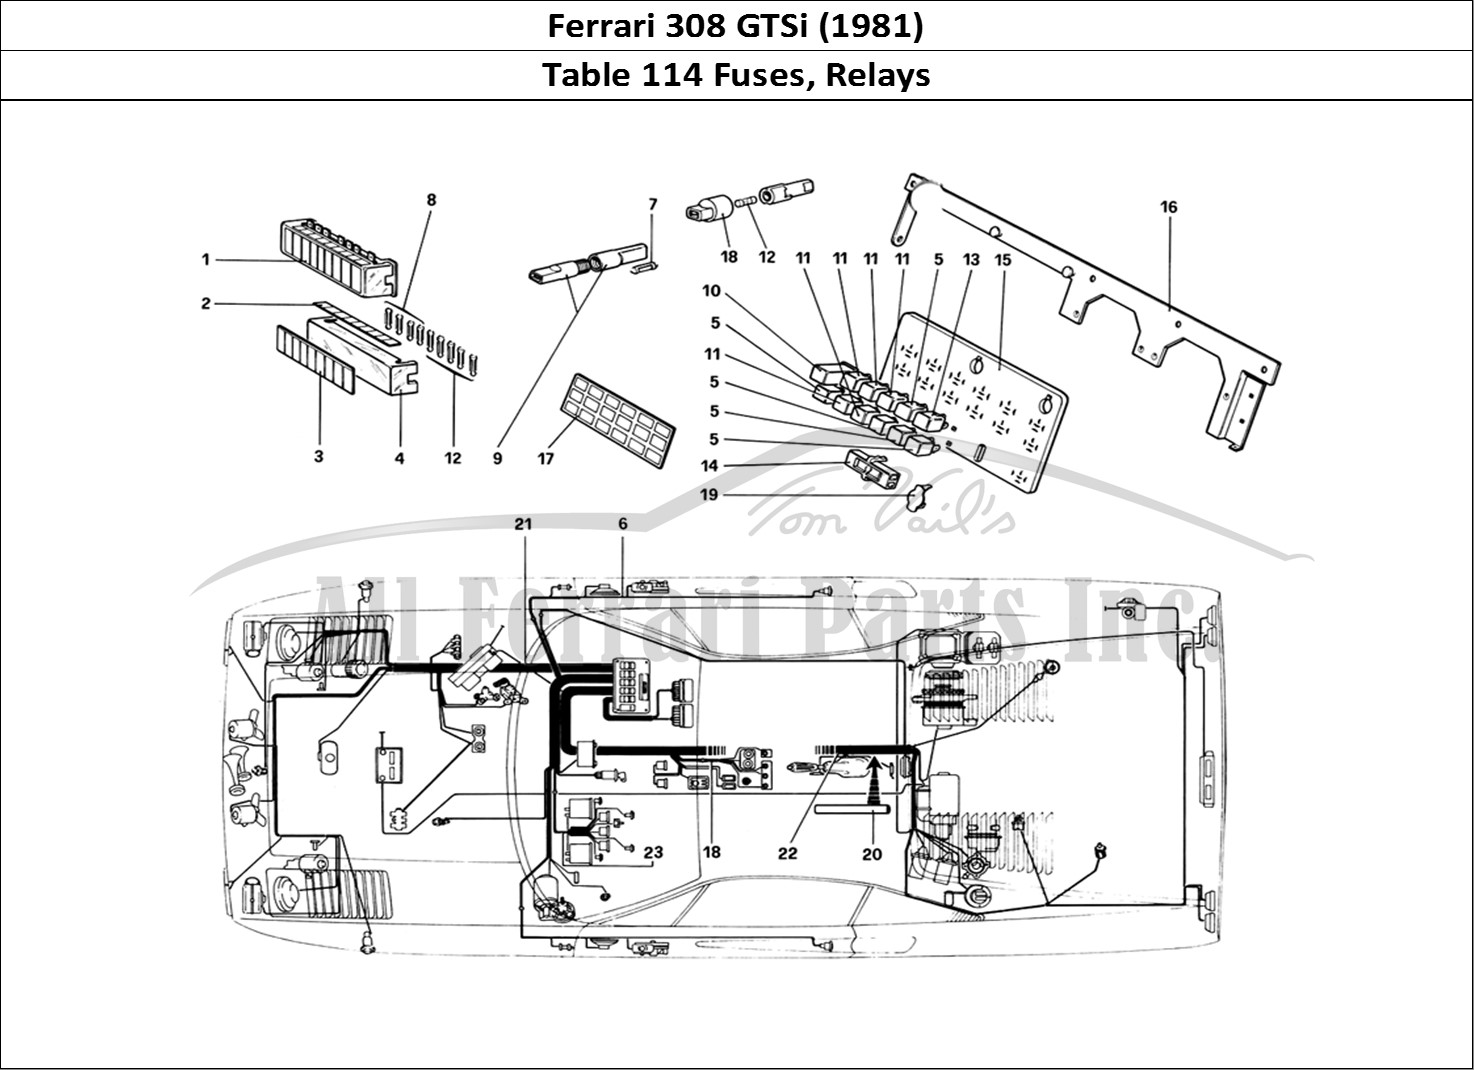 Ferrari Parts Ferrari 308 GTBi (1981) Page 114 Fuses and Relays